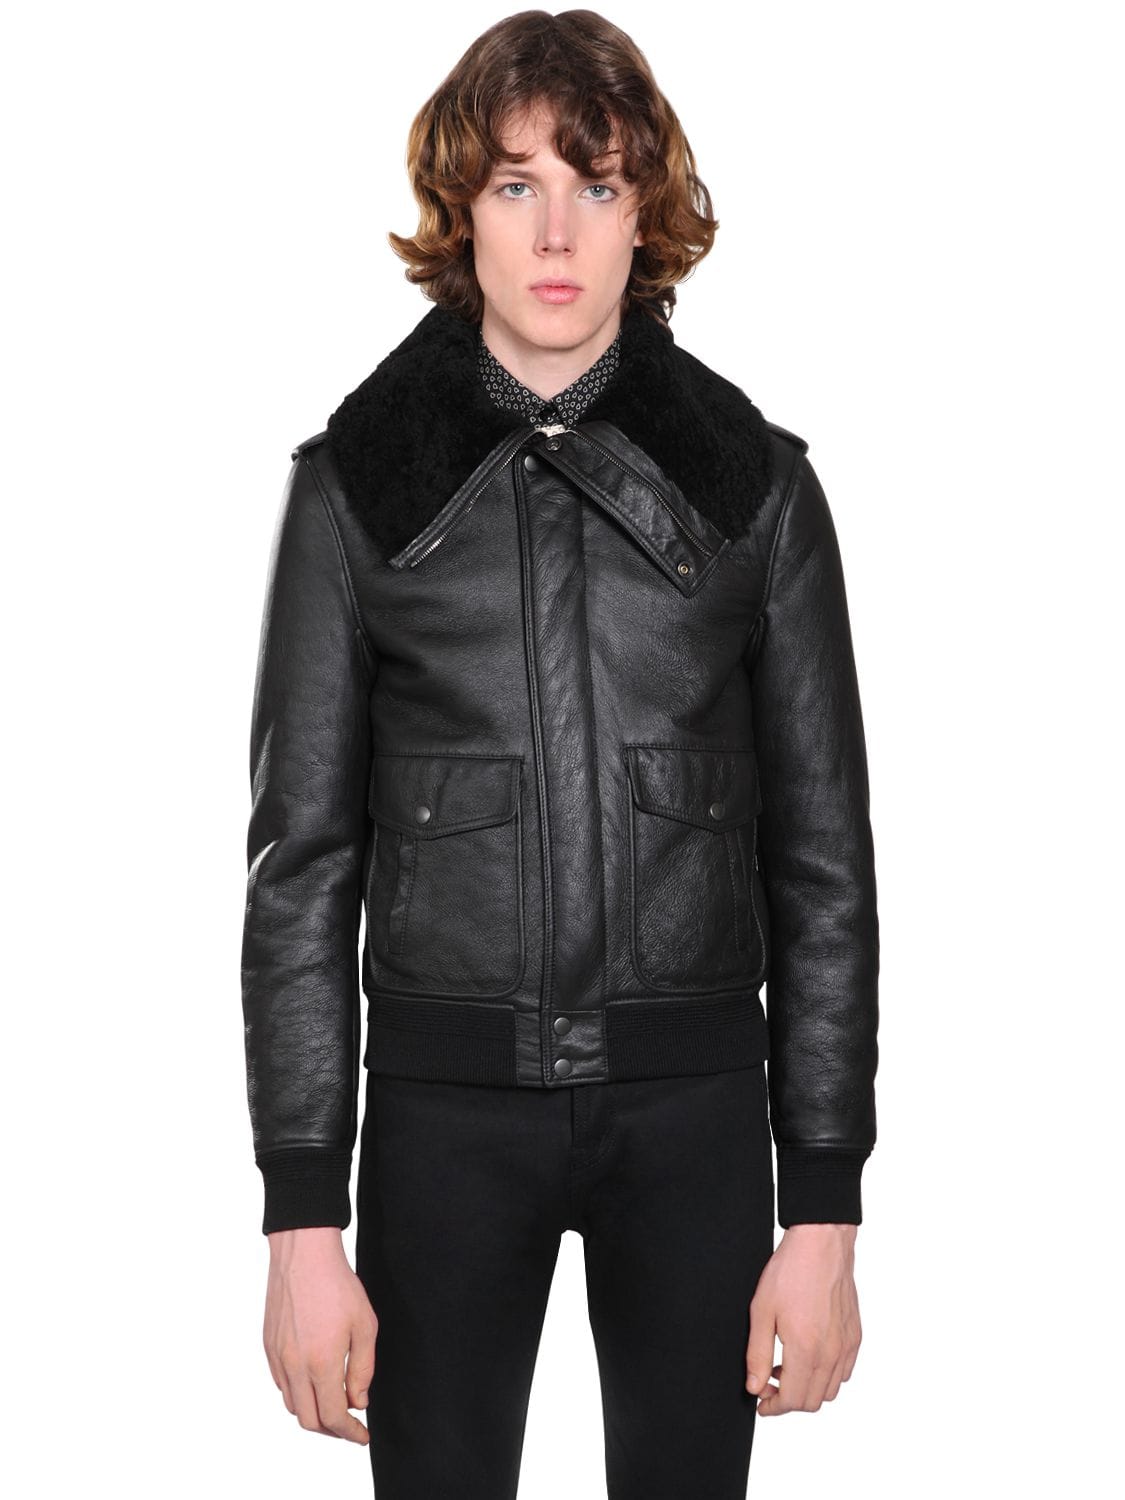 Leather Aviator Jacket | The Fashionisto